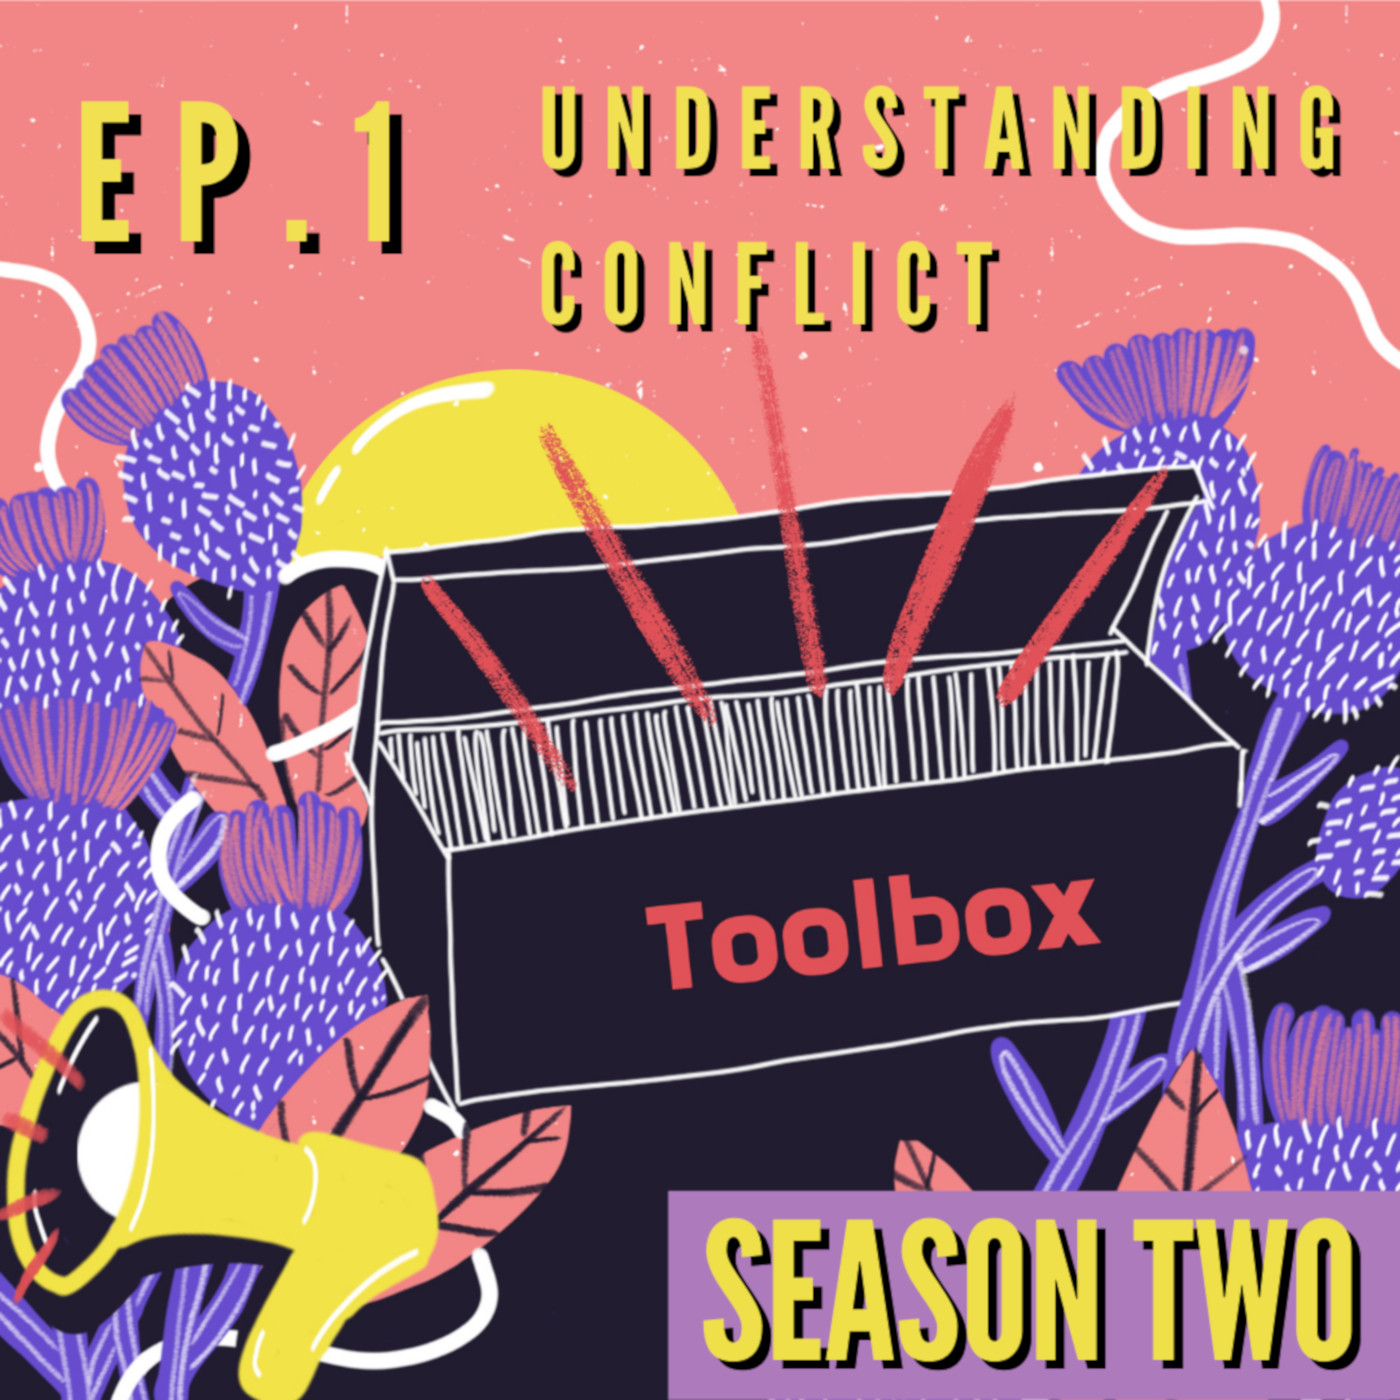 Toolbox: Understanding conflict